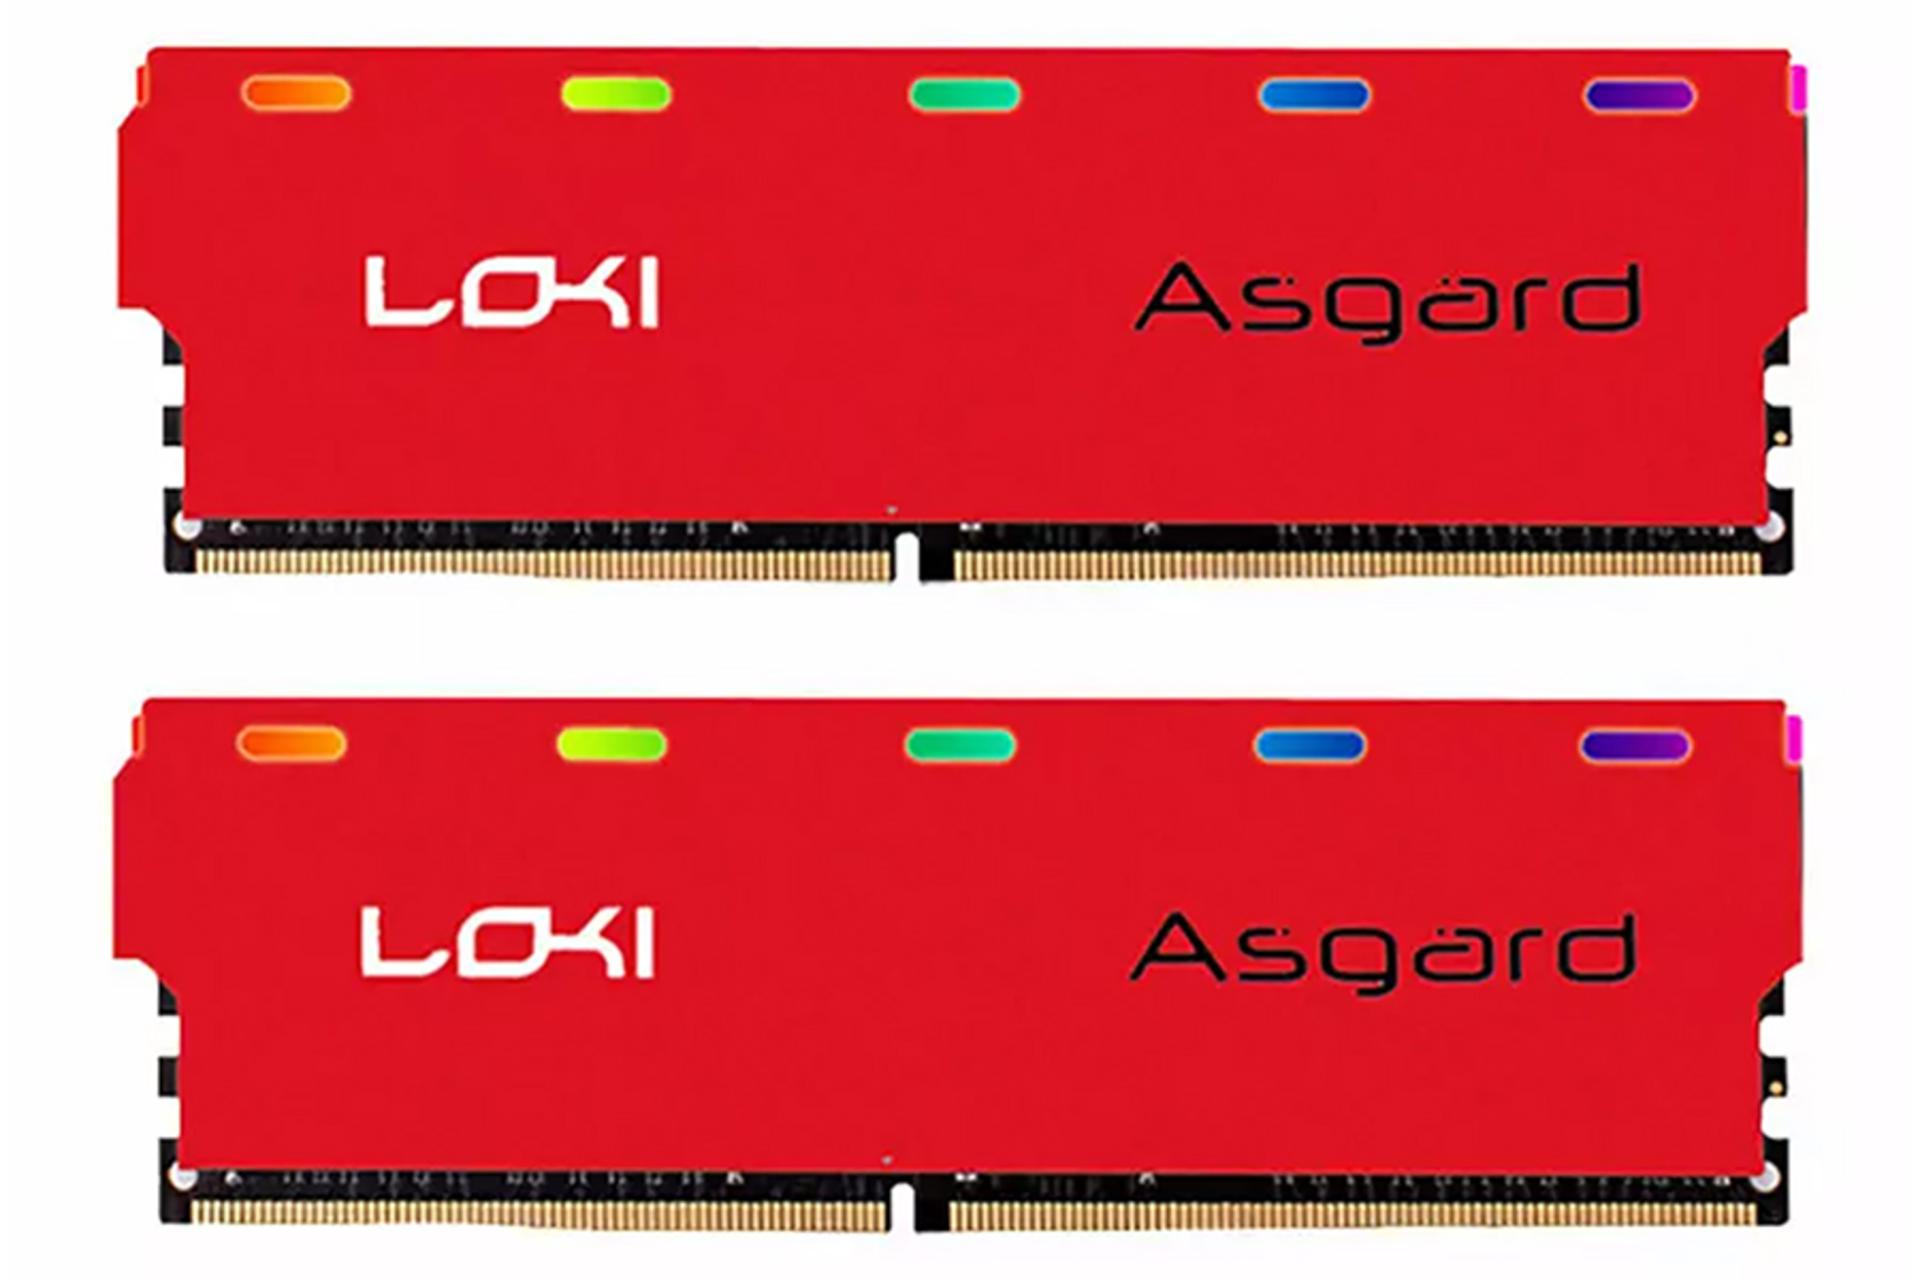 رم ازگارد Loki W1 ظرفیت 16 گیگابایت (2x8) از نوع DDR4-3200